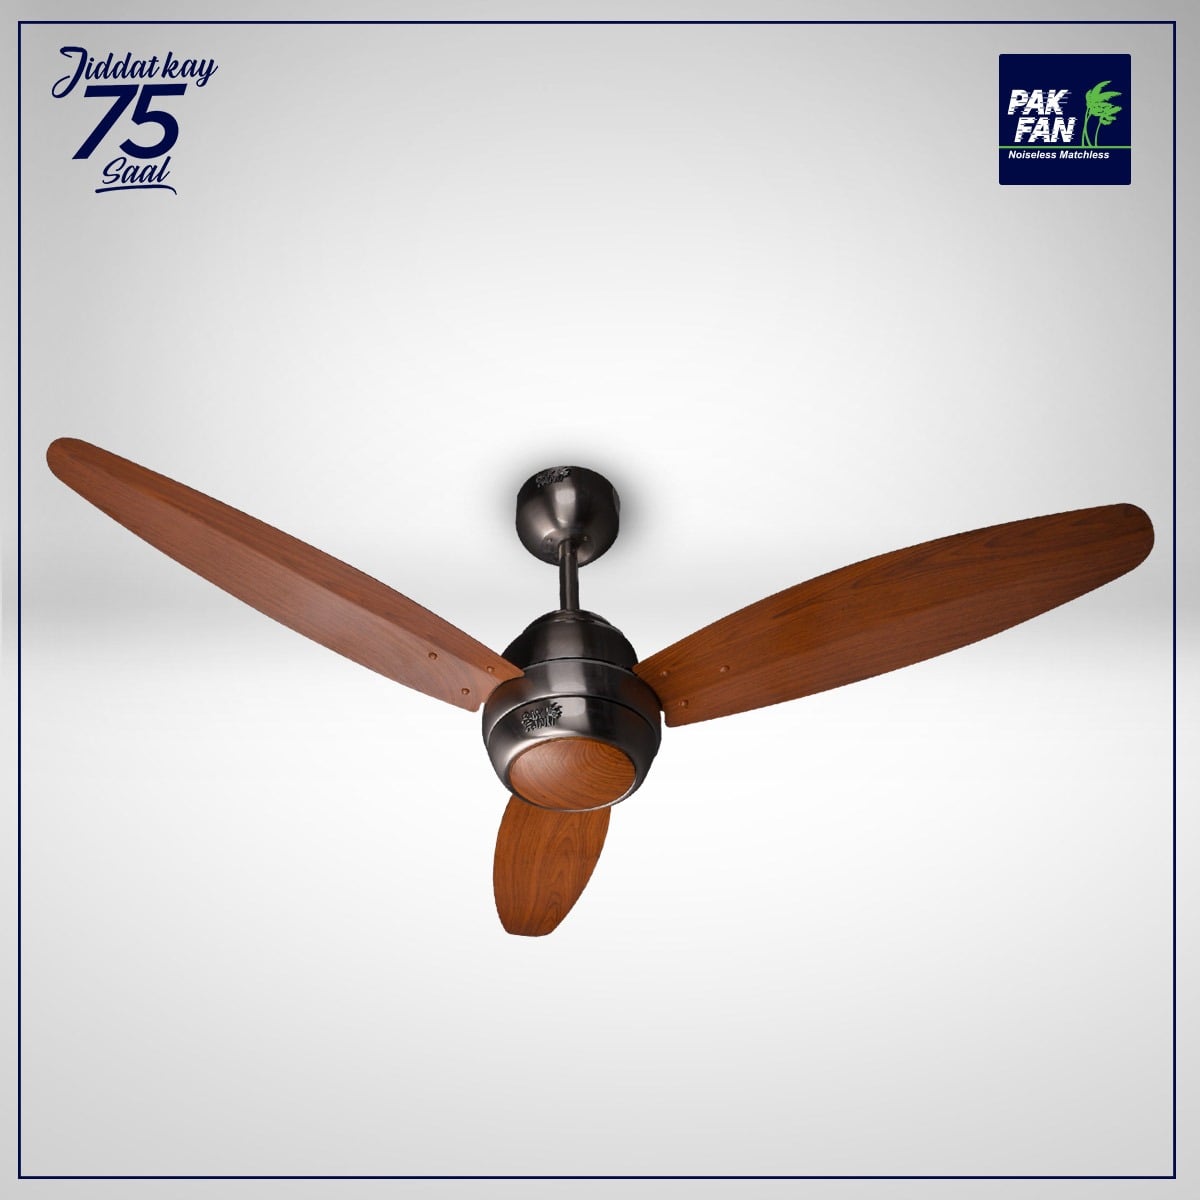 Pak Fan Ceiling Fan Elegance Model 56 inches Copper Winding Dark Wood Brand Warranty Installment